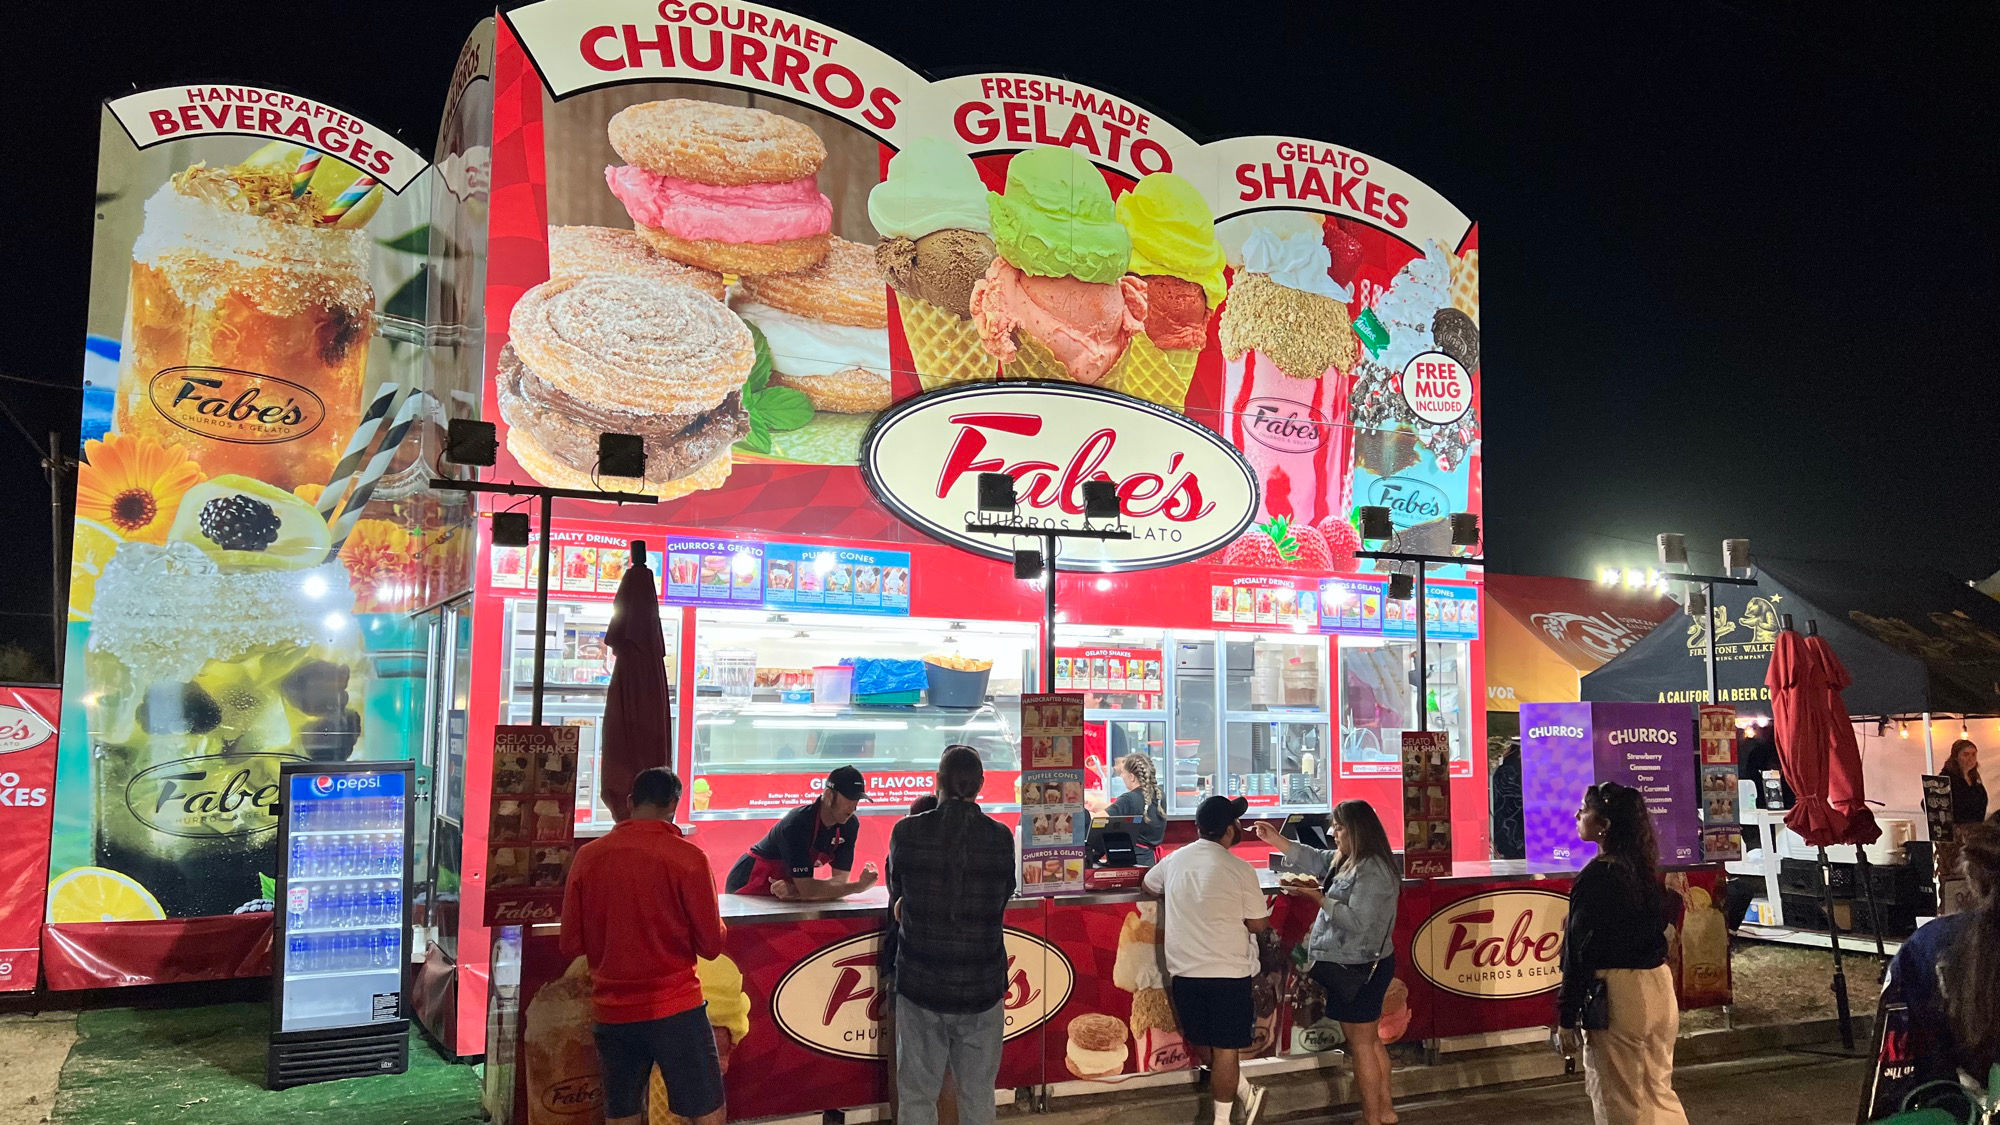 Ventura County Fair Fabe's Churros & Gelato